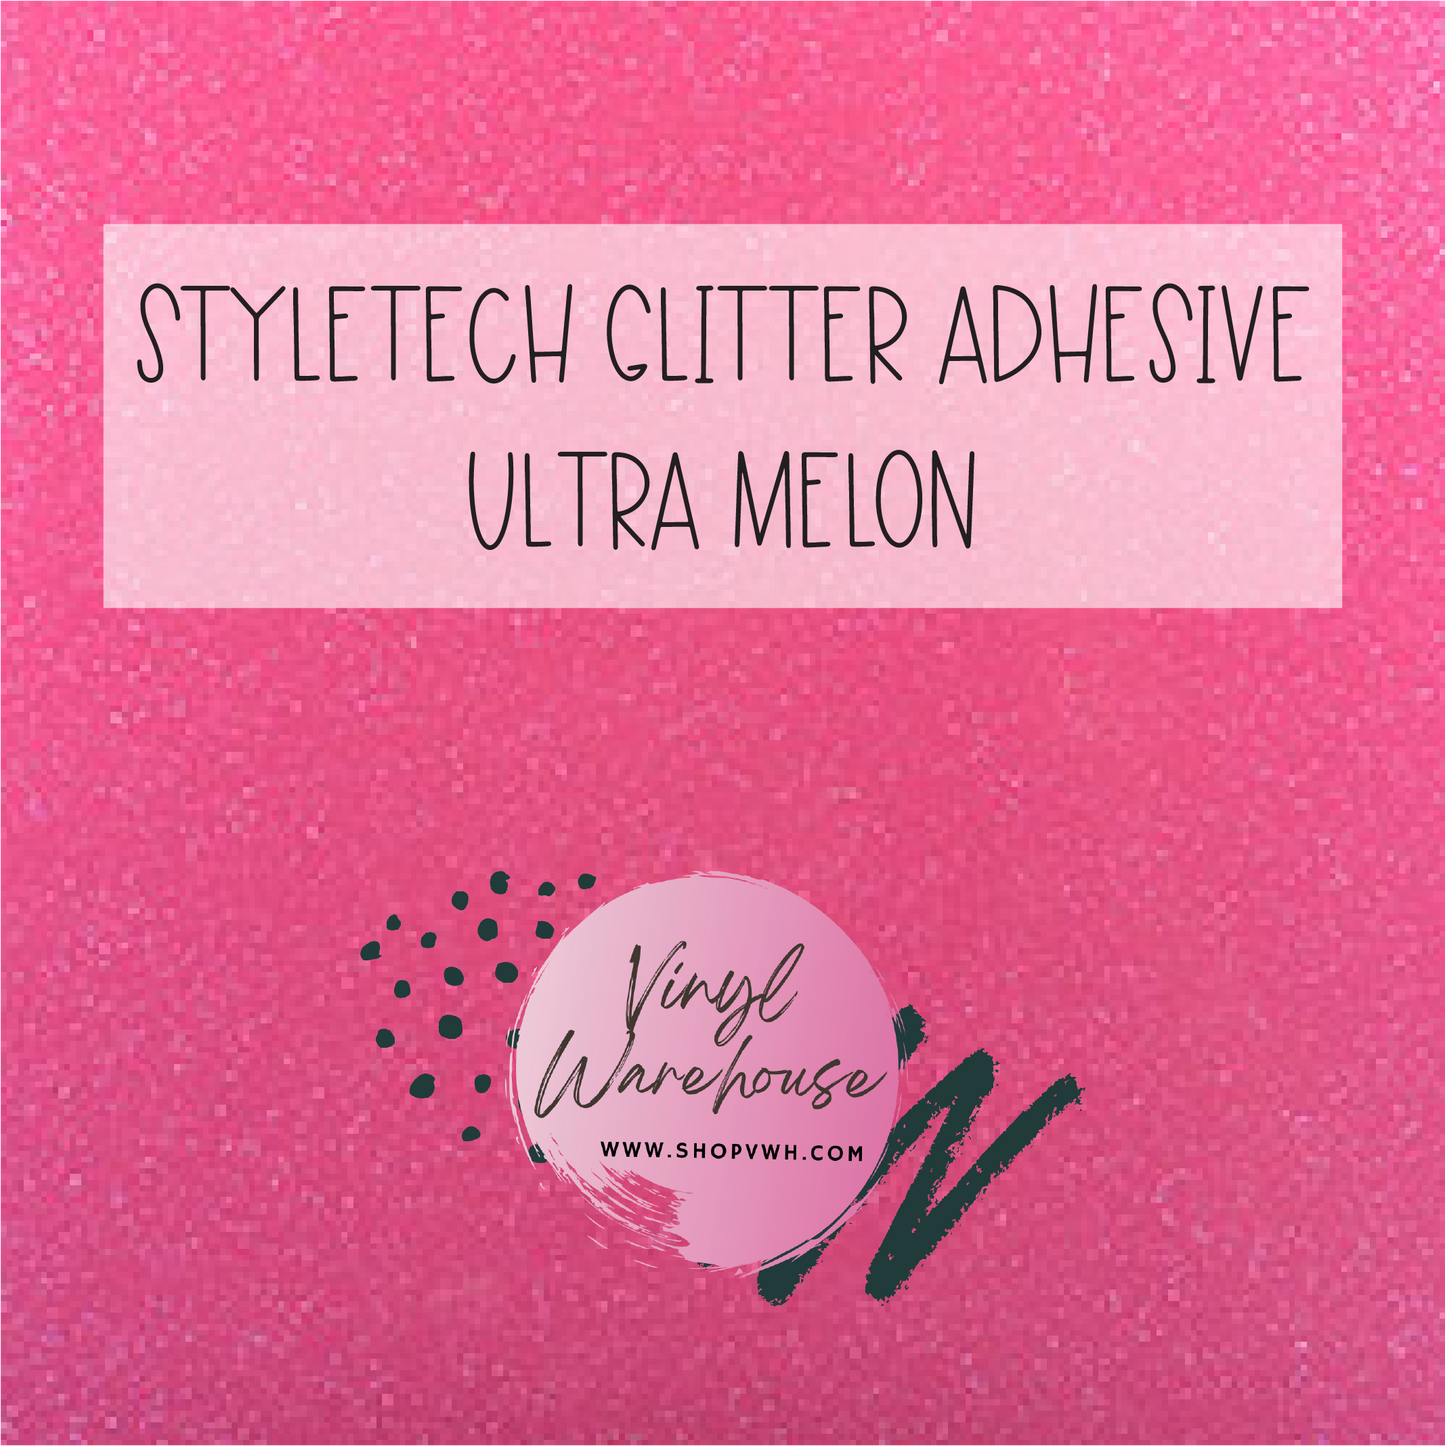 StyleTech Glitter Adhesive - Ultra Melon